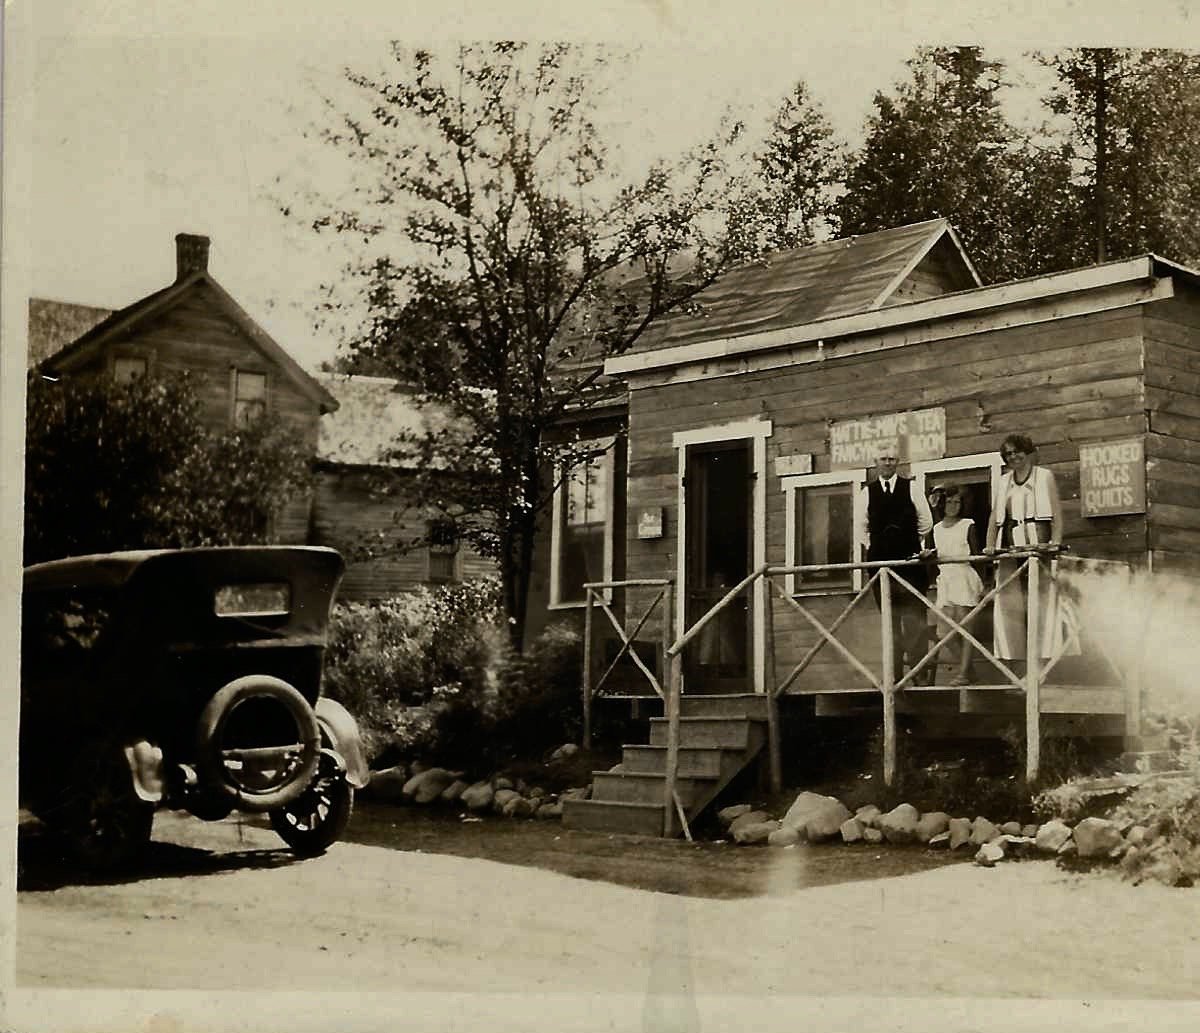 Hattie May Tea House, 1920s